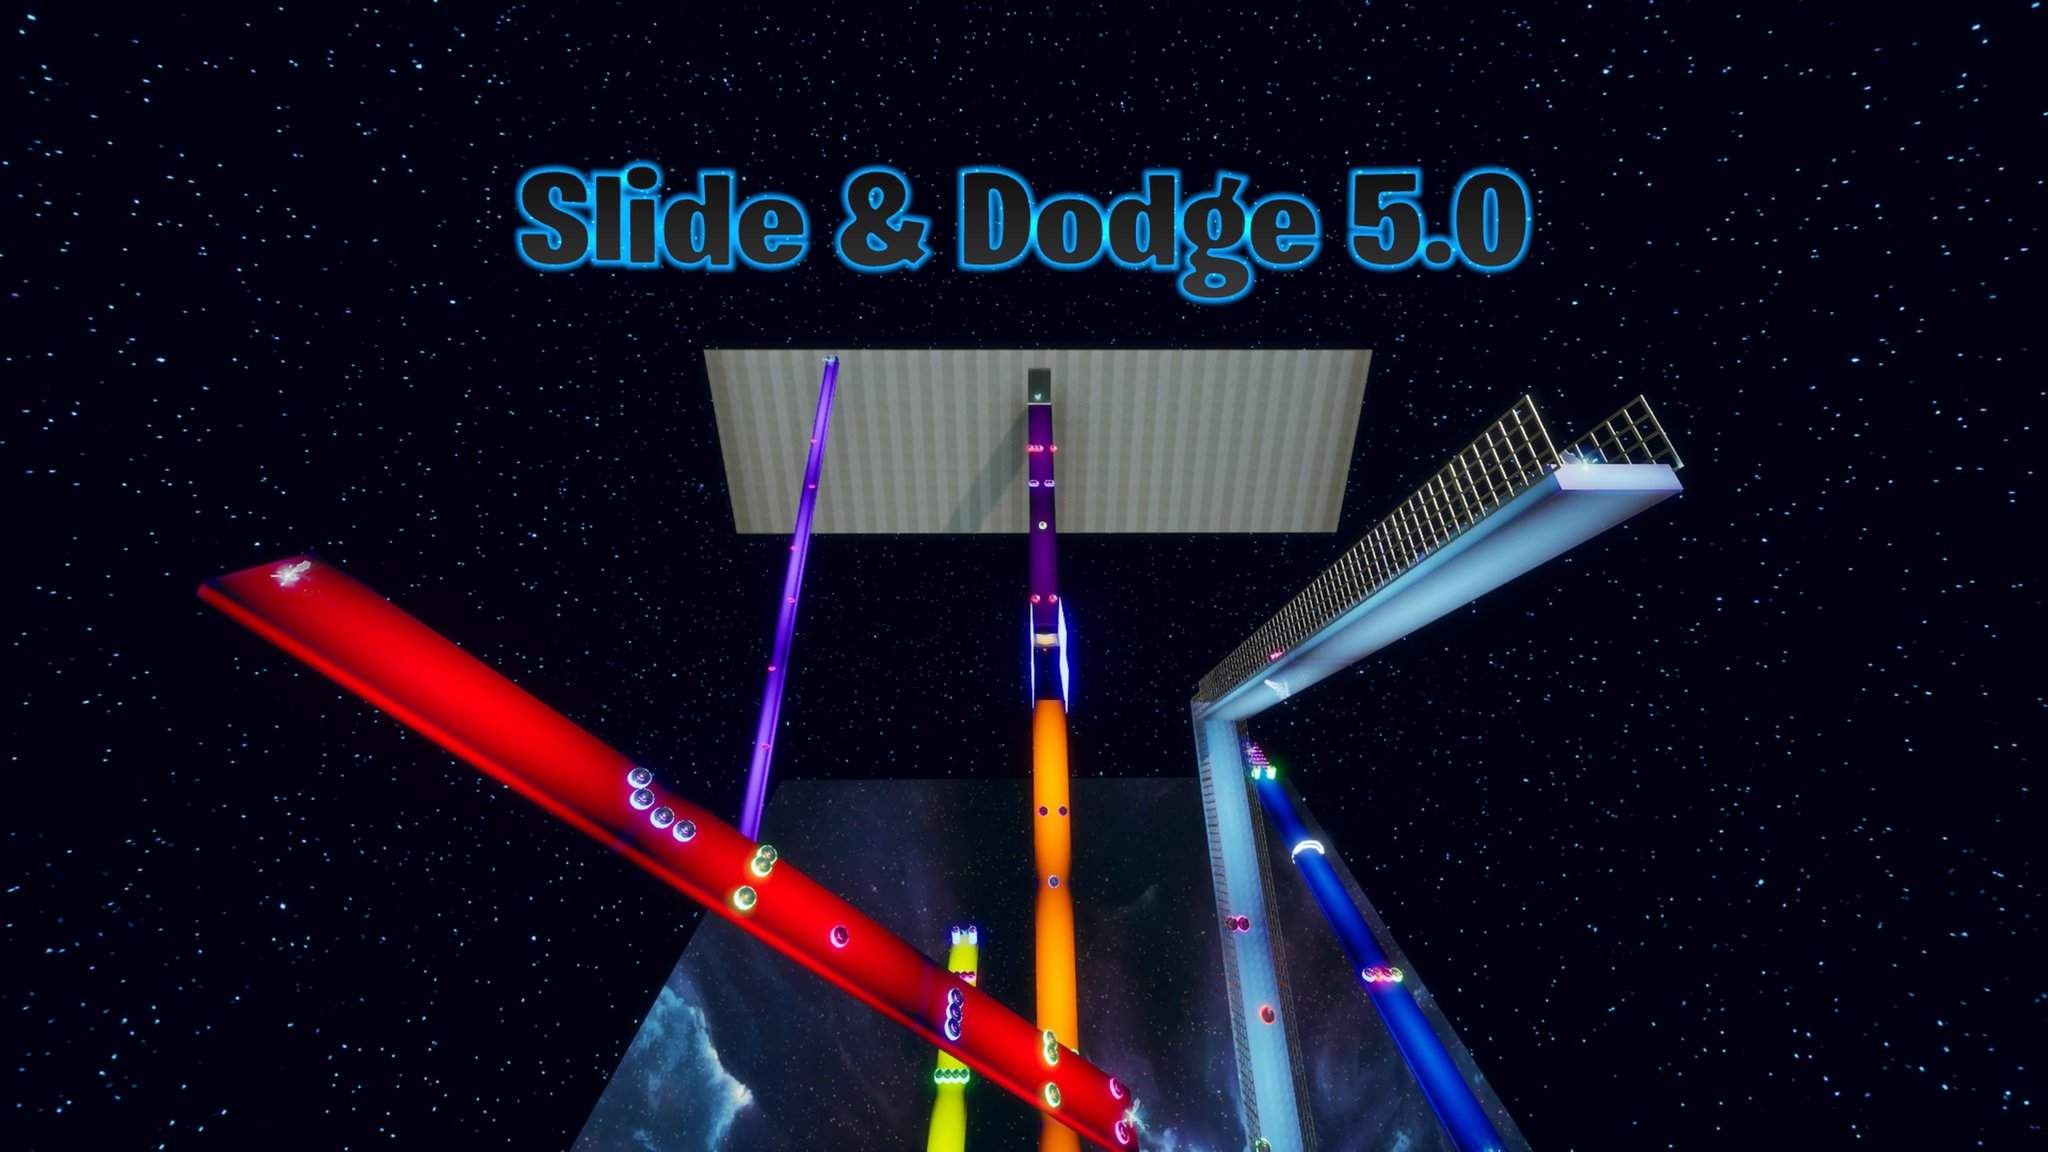 SLIDE & DODGE 5.0